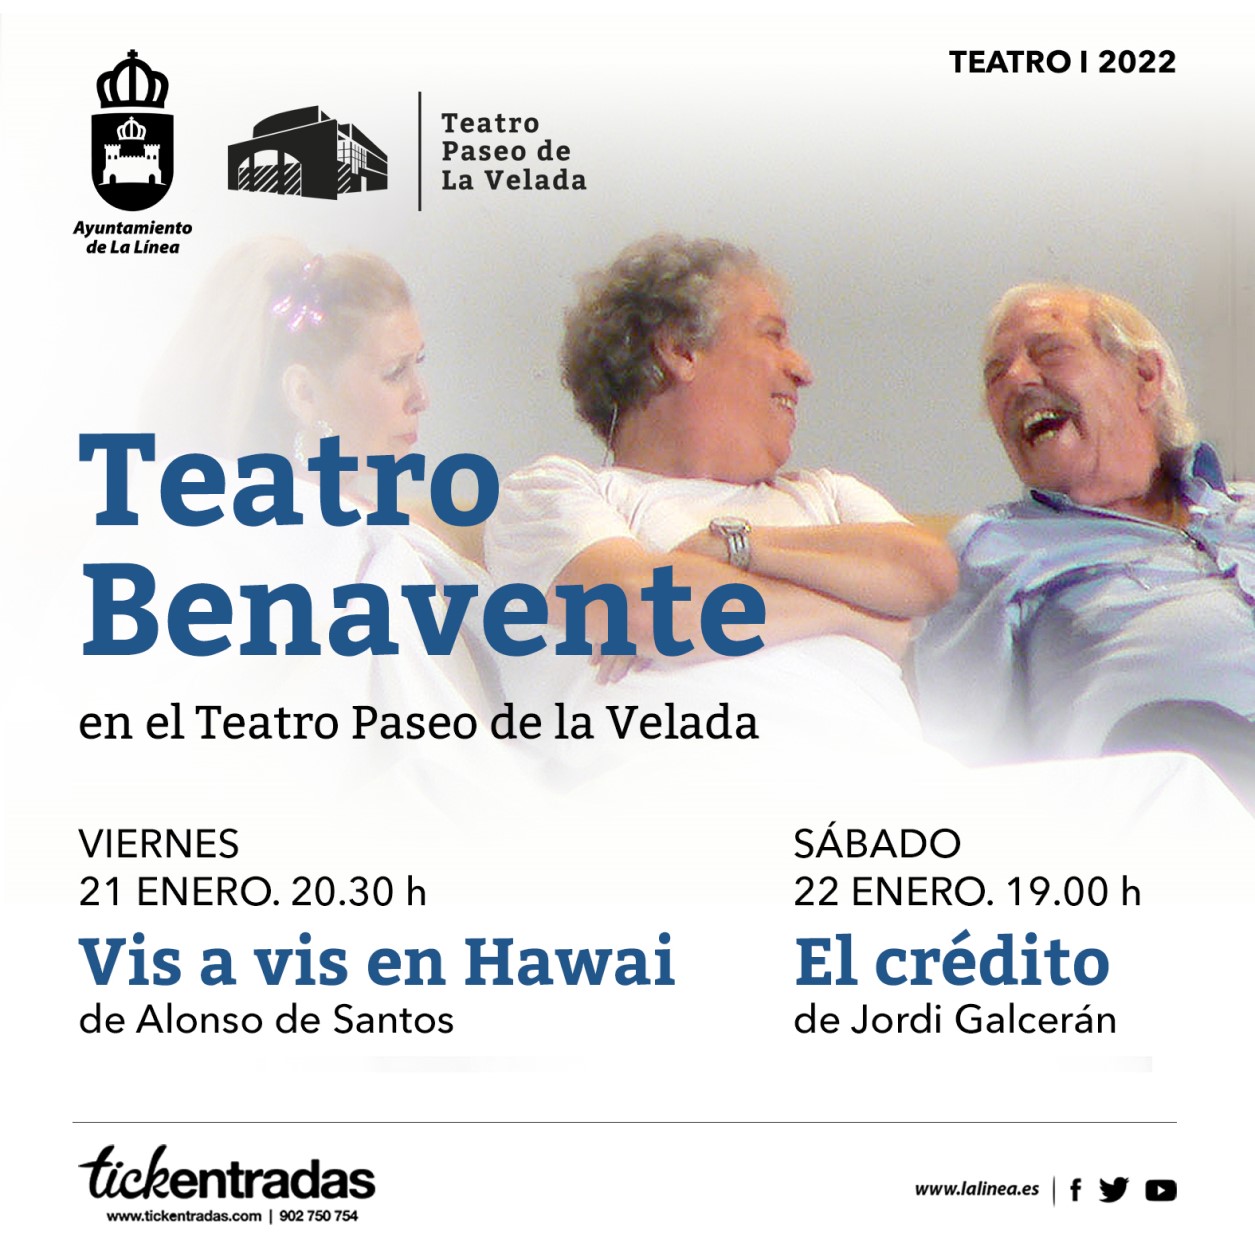 sites/default/files/2021/agenda/teatro/Tratro_Pso_de_la_Velada-Teatro_Benavente.jpg